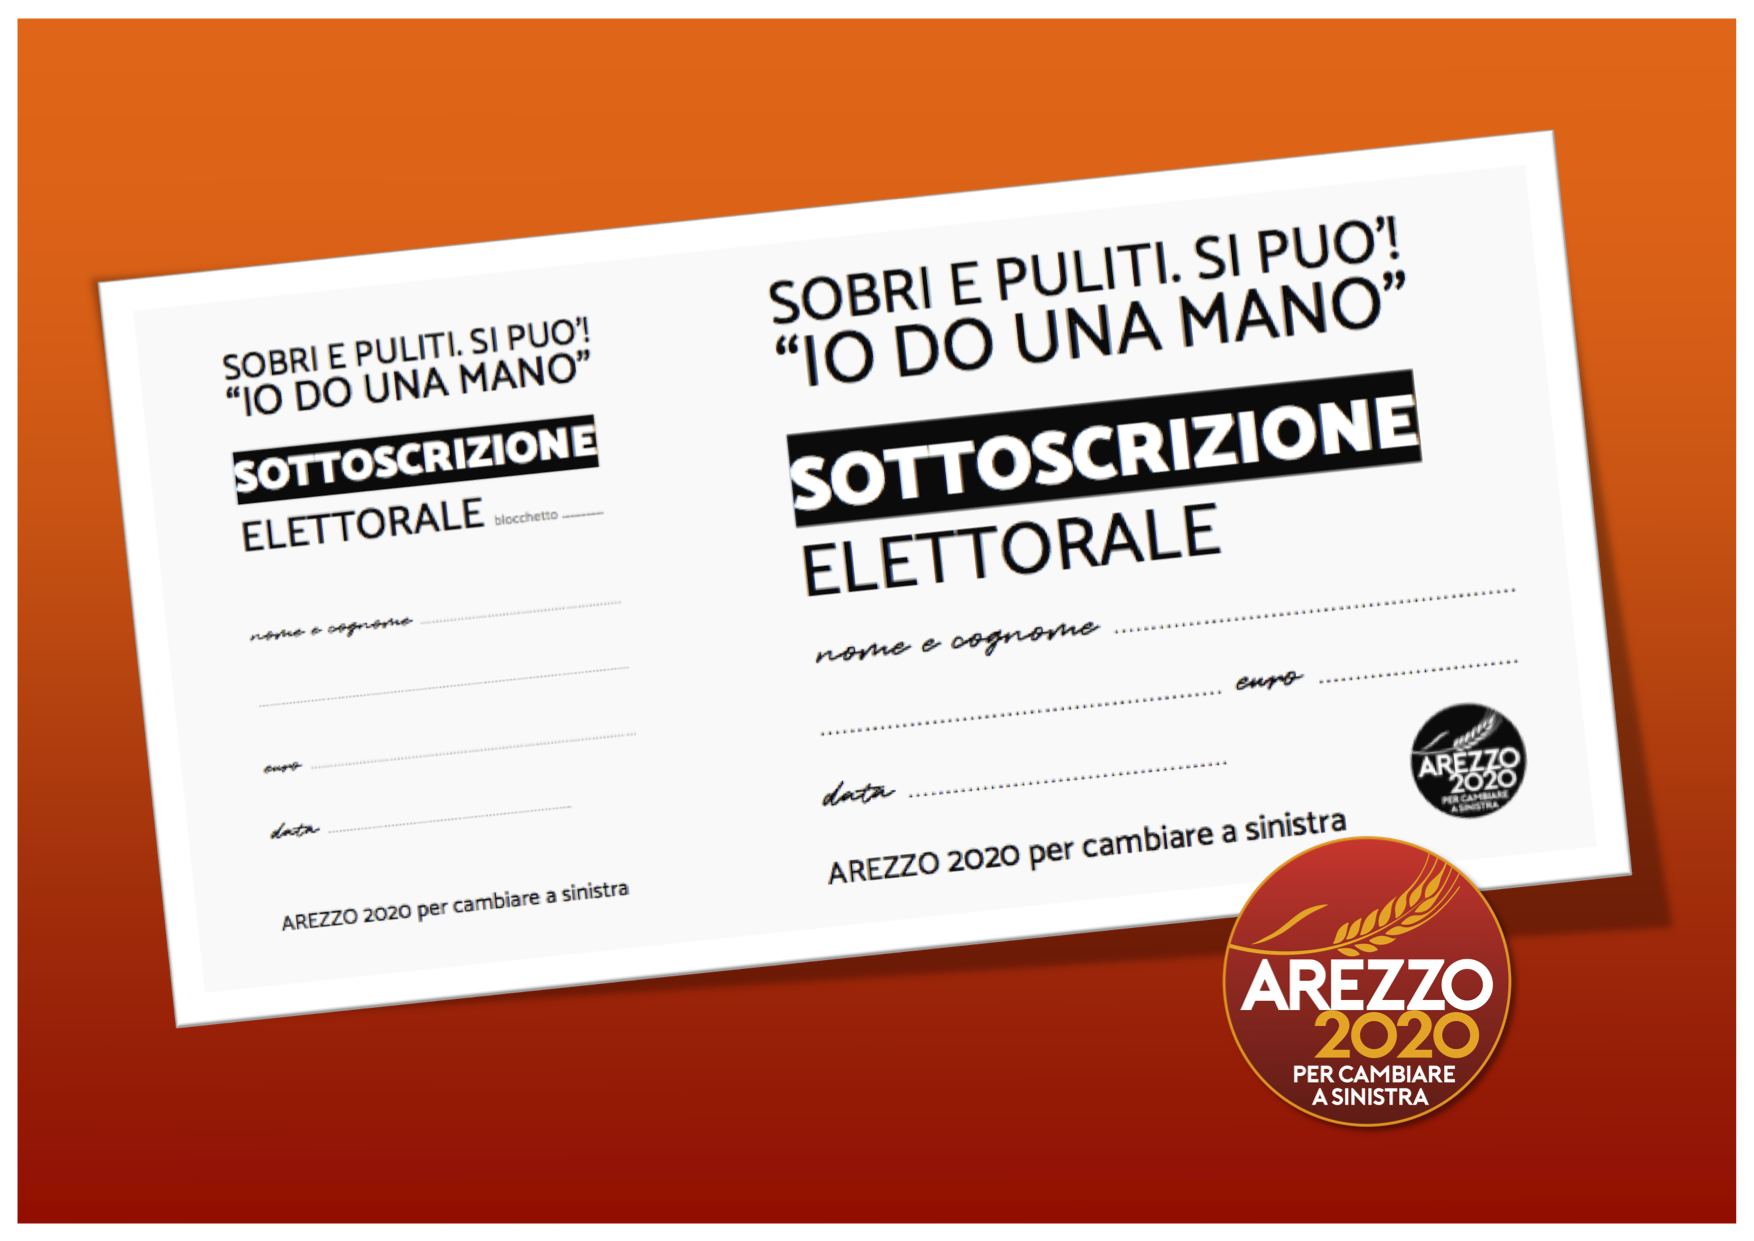 Arezzo 2020: “Sobri e puliti, si può!, noi ci autofinanziamo così”